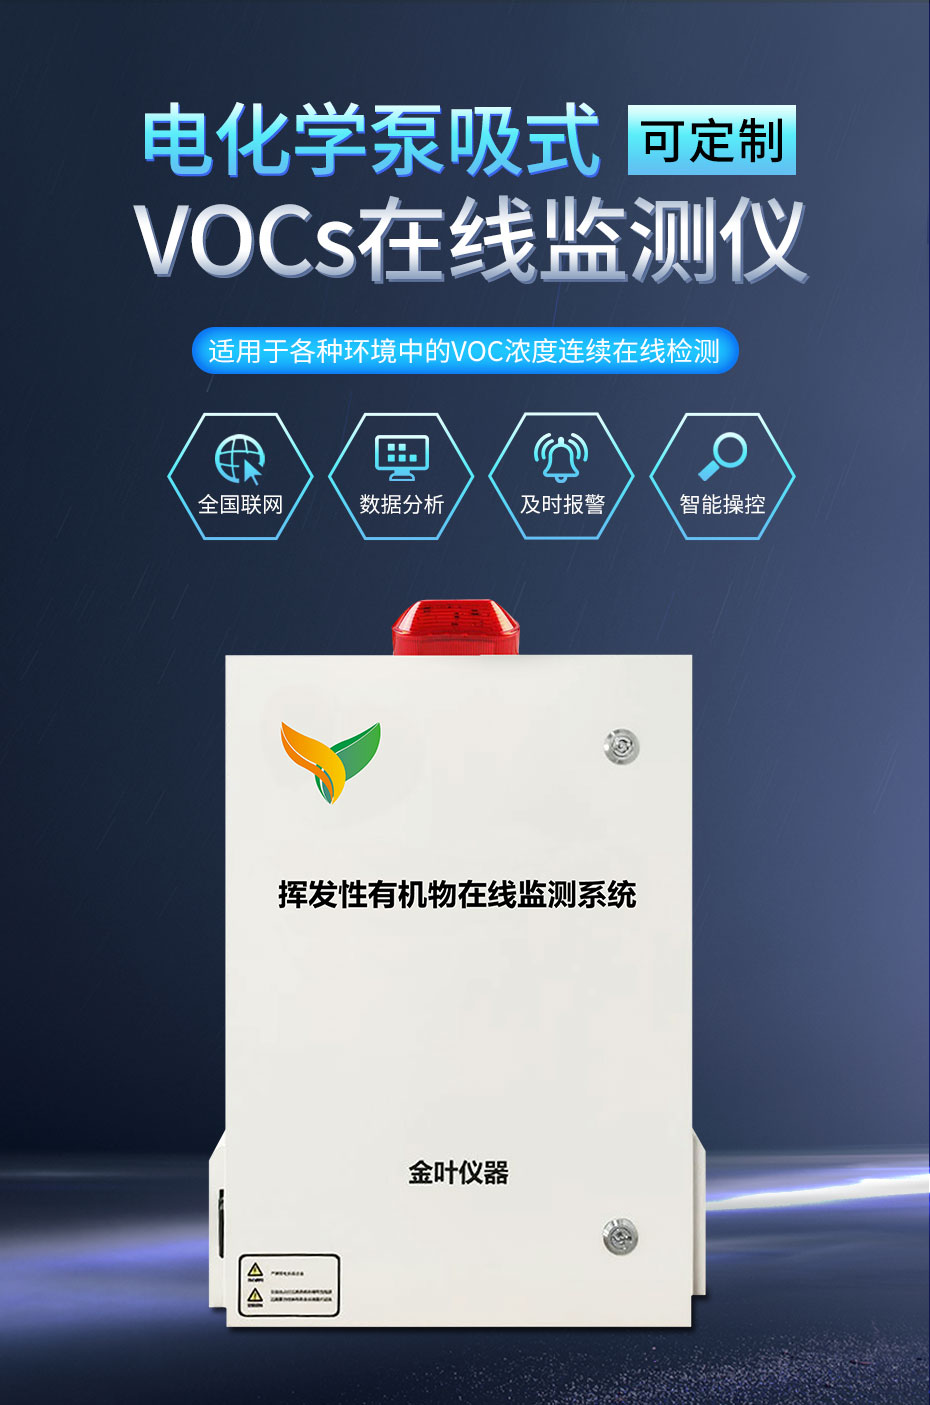 vocs在线监测设备的监测要求